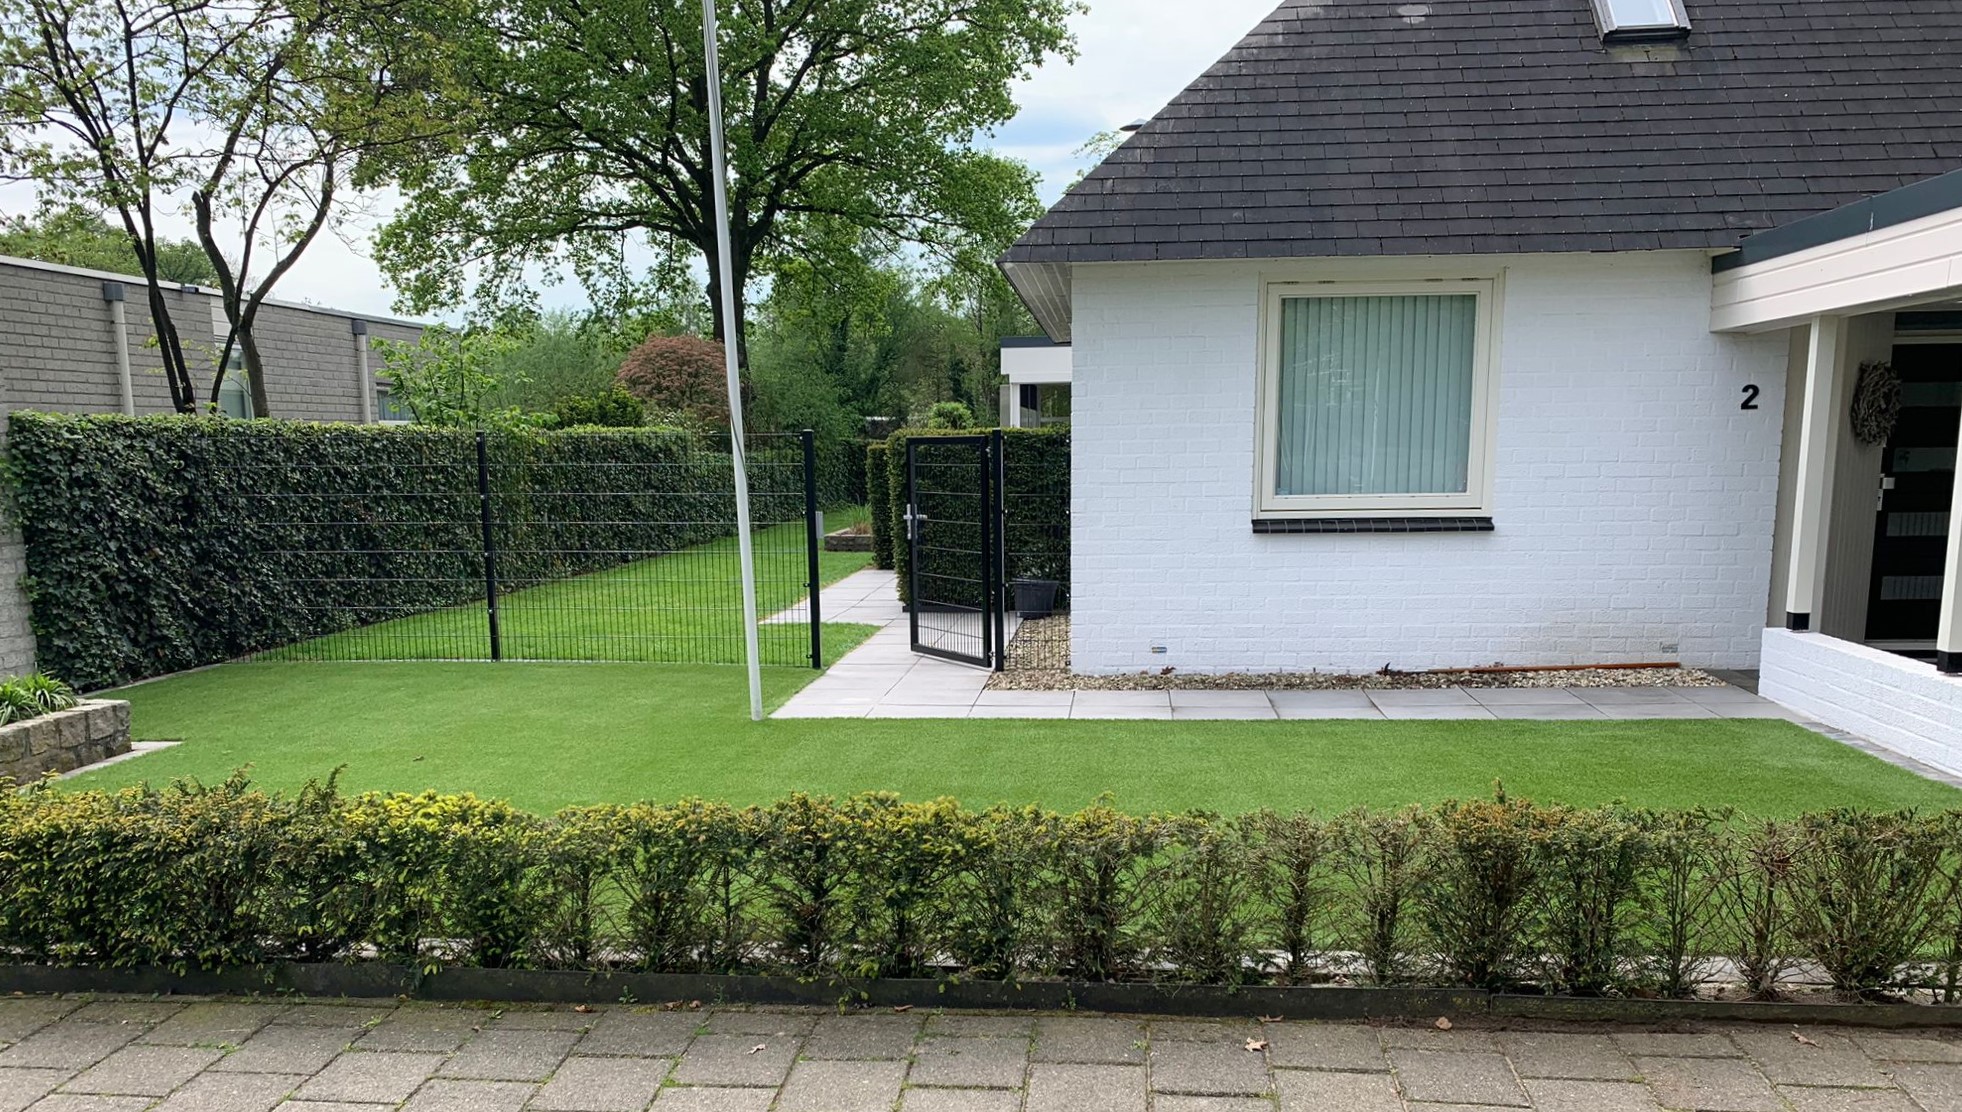 Royal Grass of Echt Gras in Hengelo